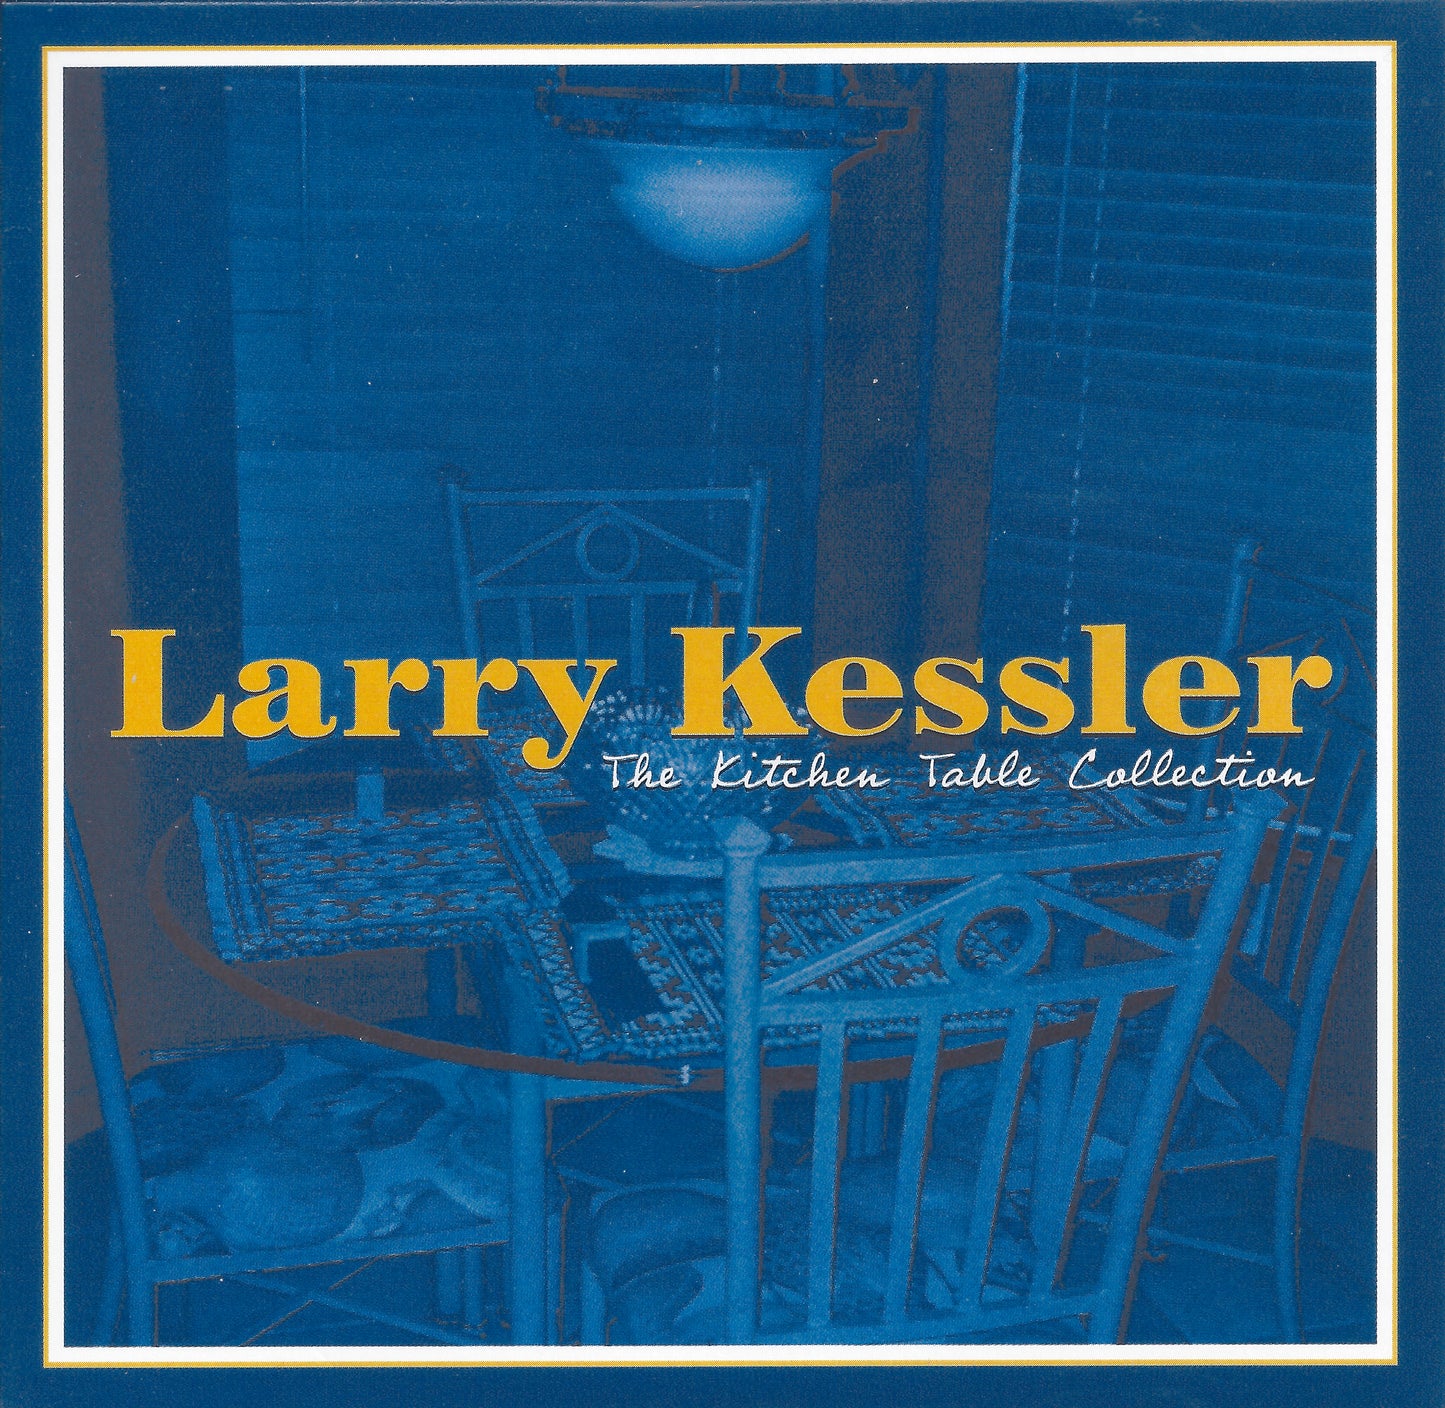 You - Larry Kessler